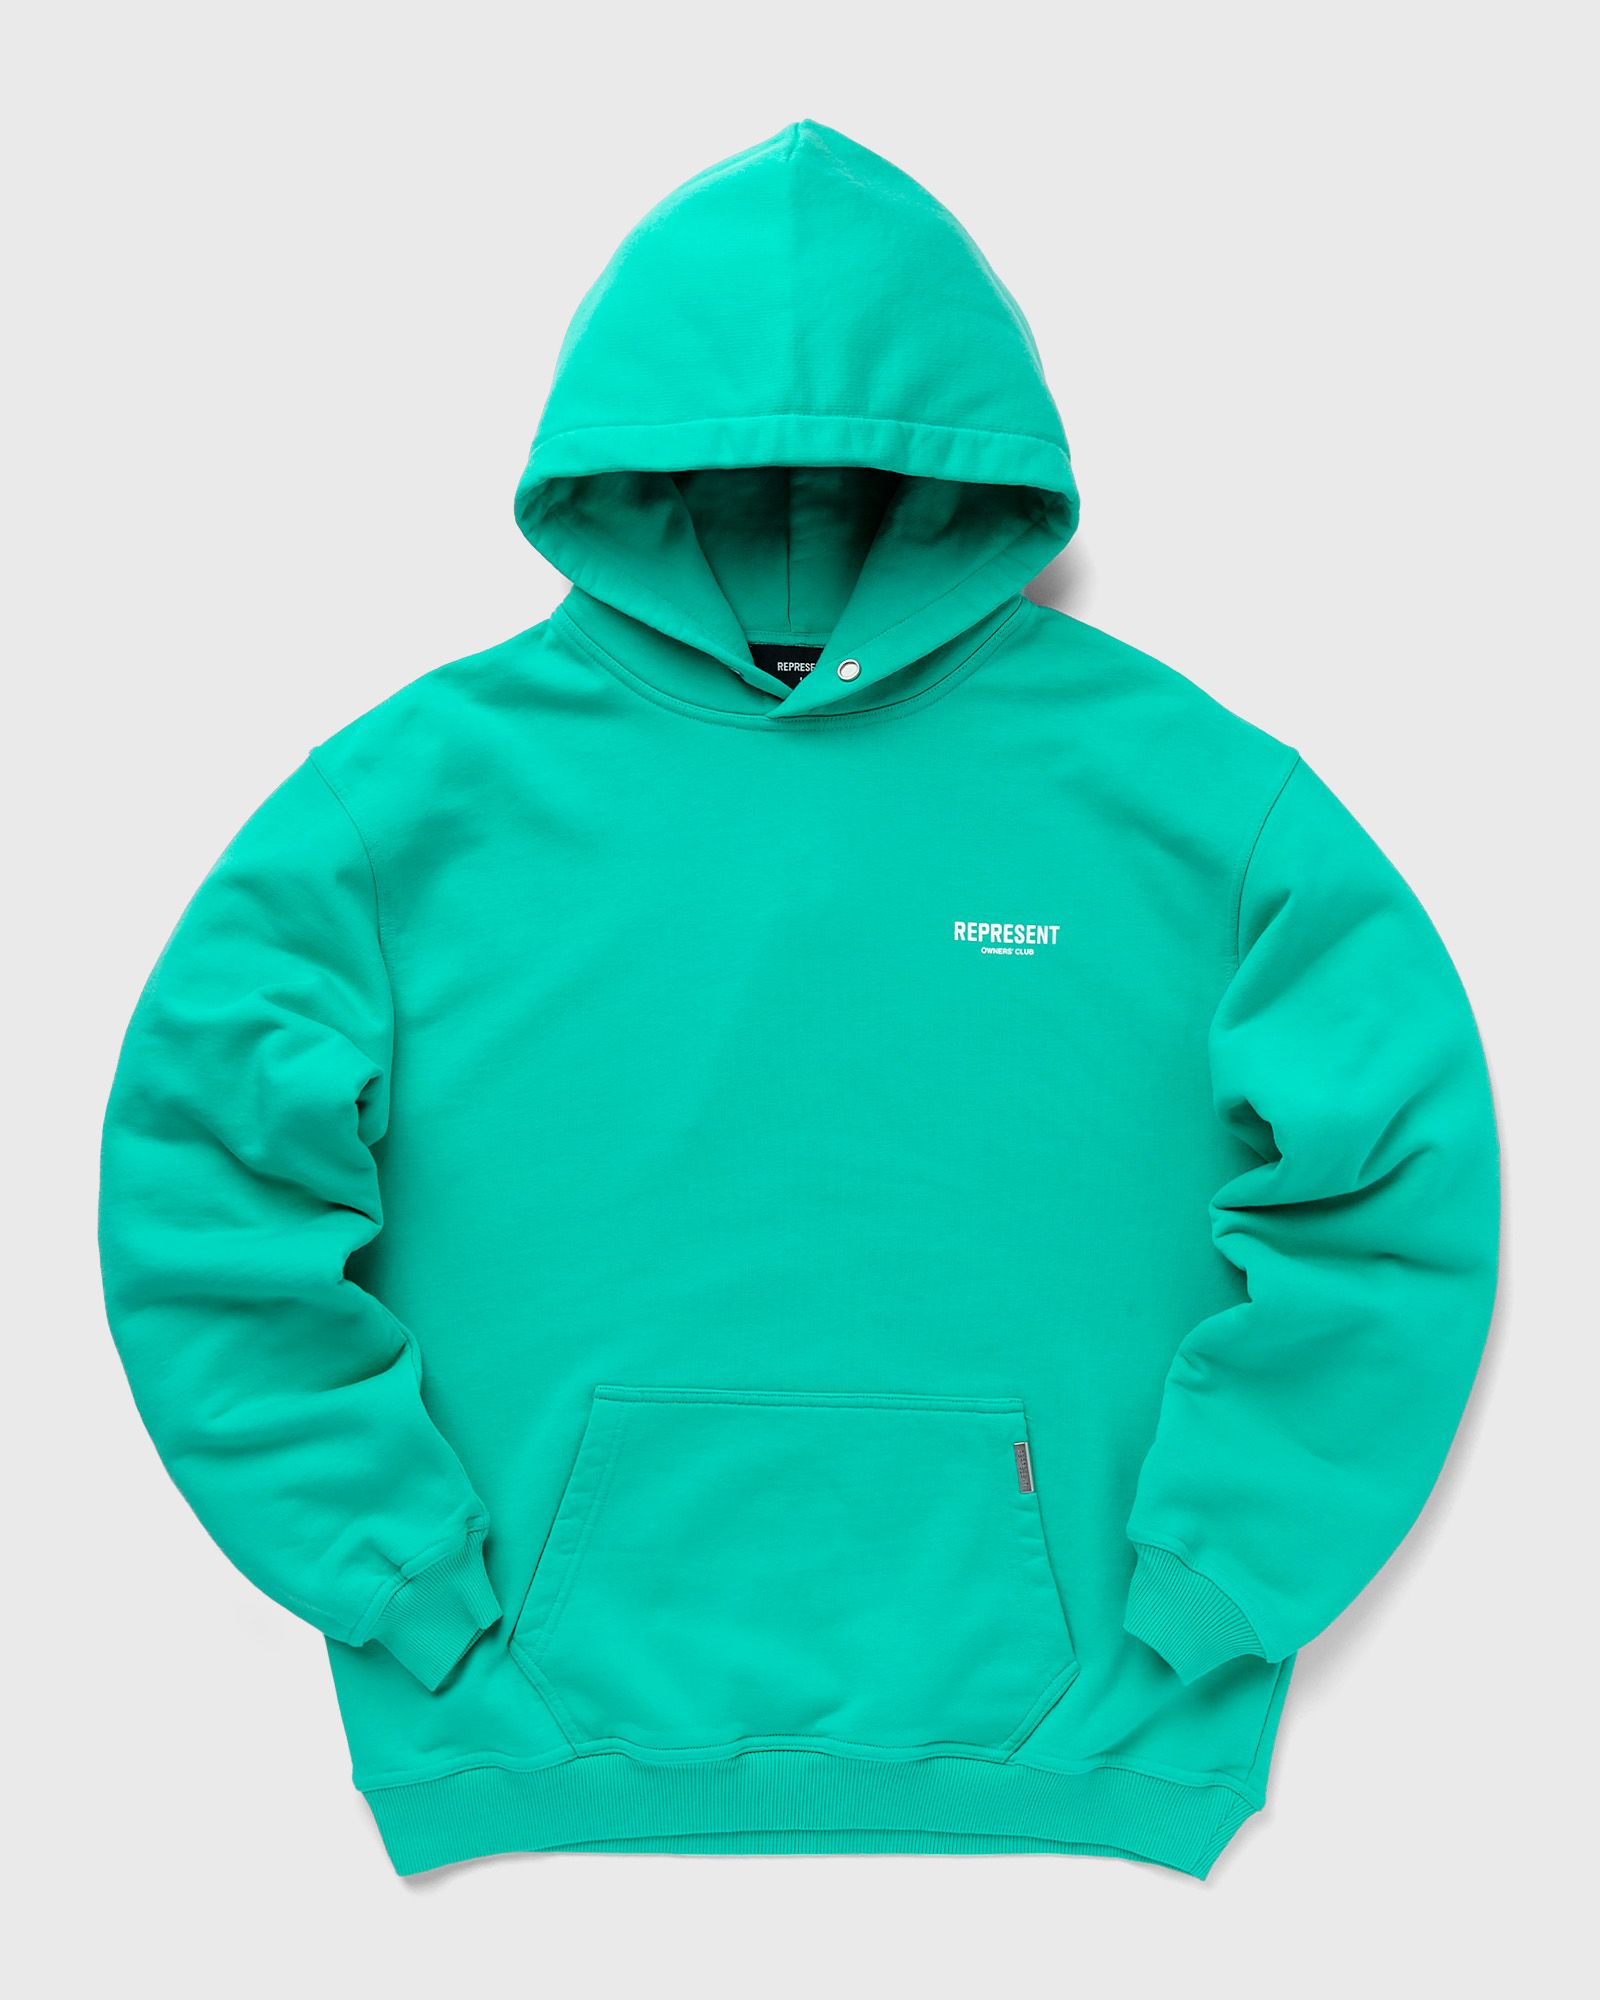 Represent - exclusive bstn x  owners club hoodie men hoodies green in größe:xl